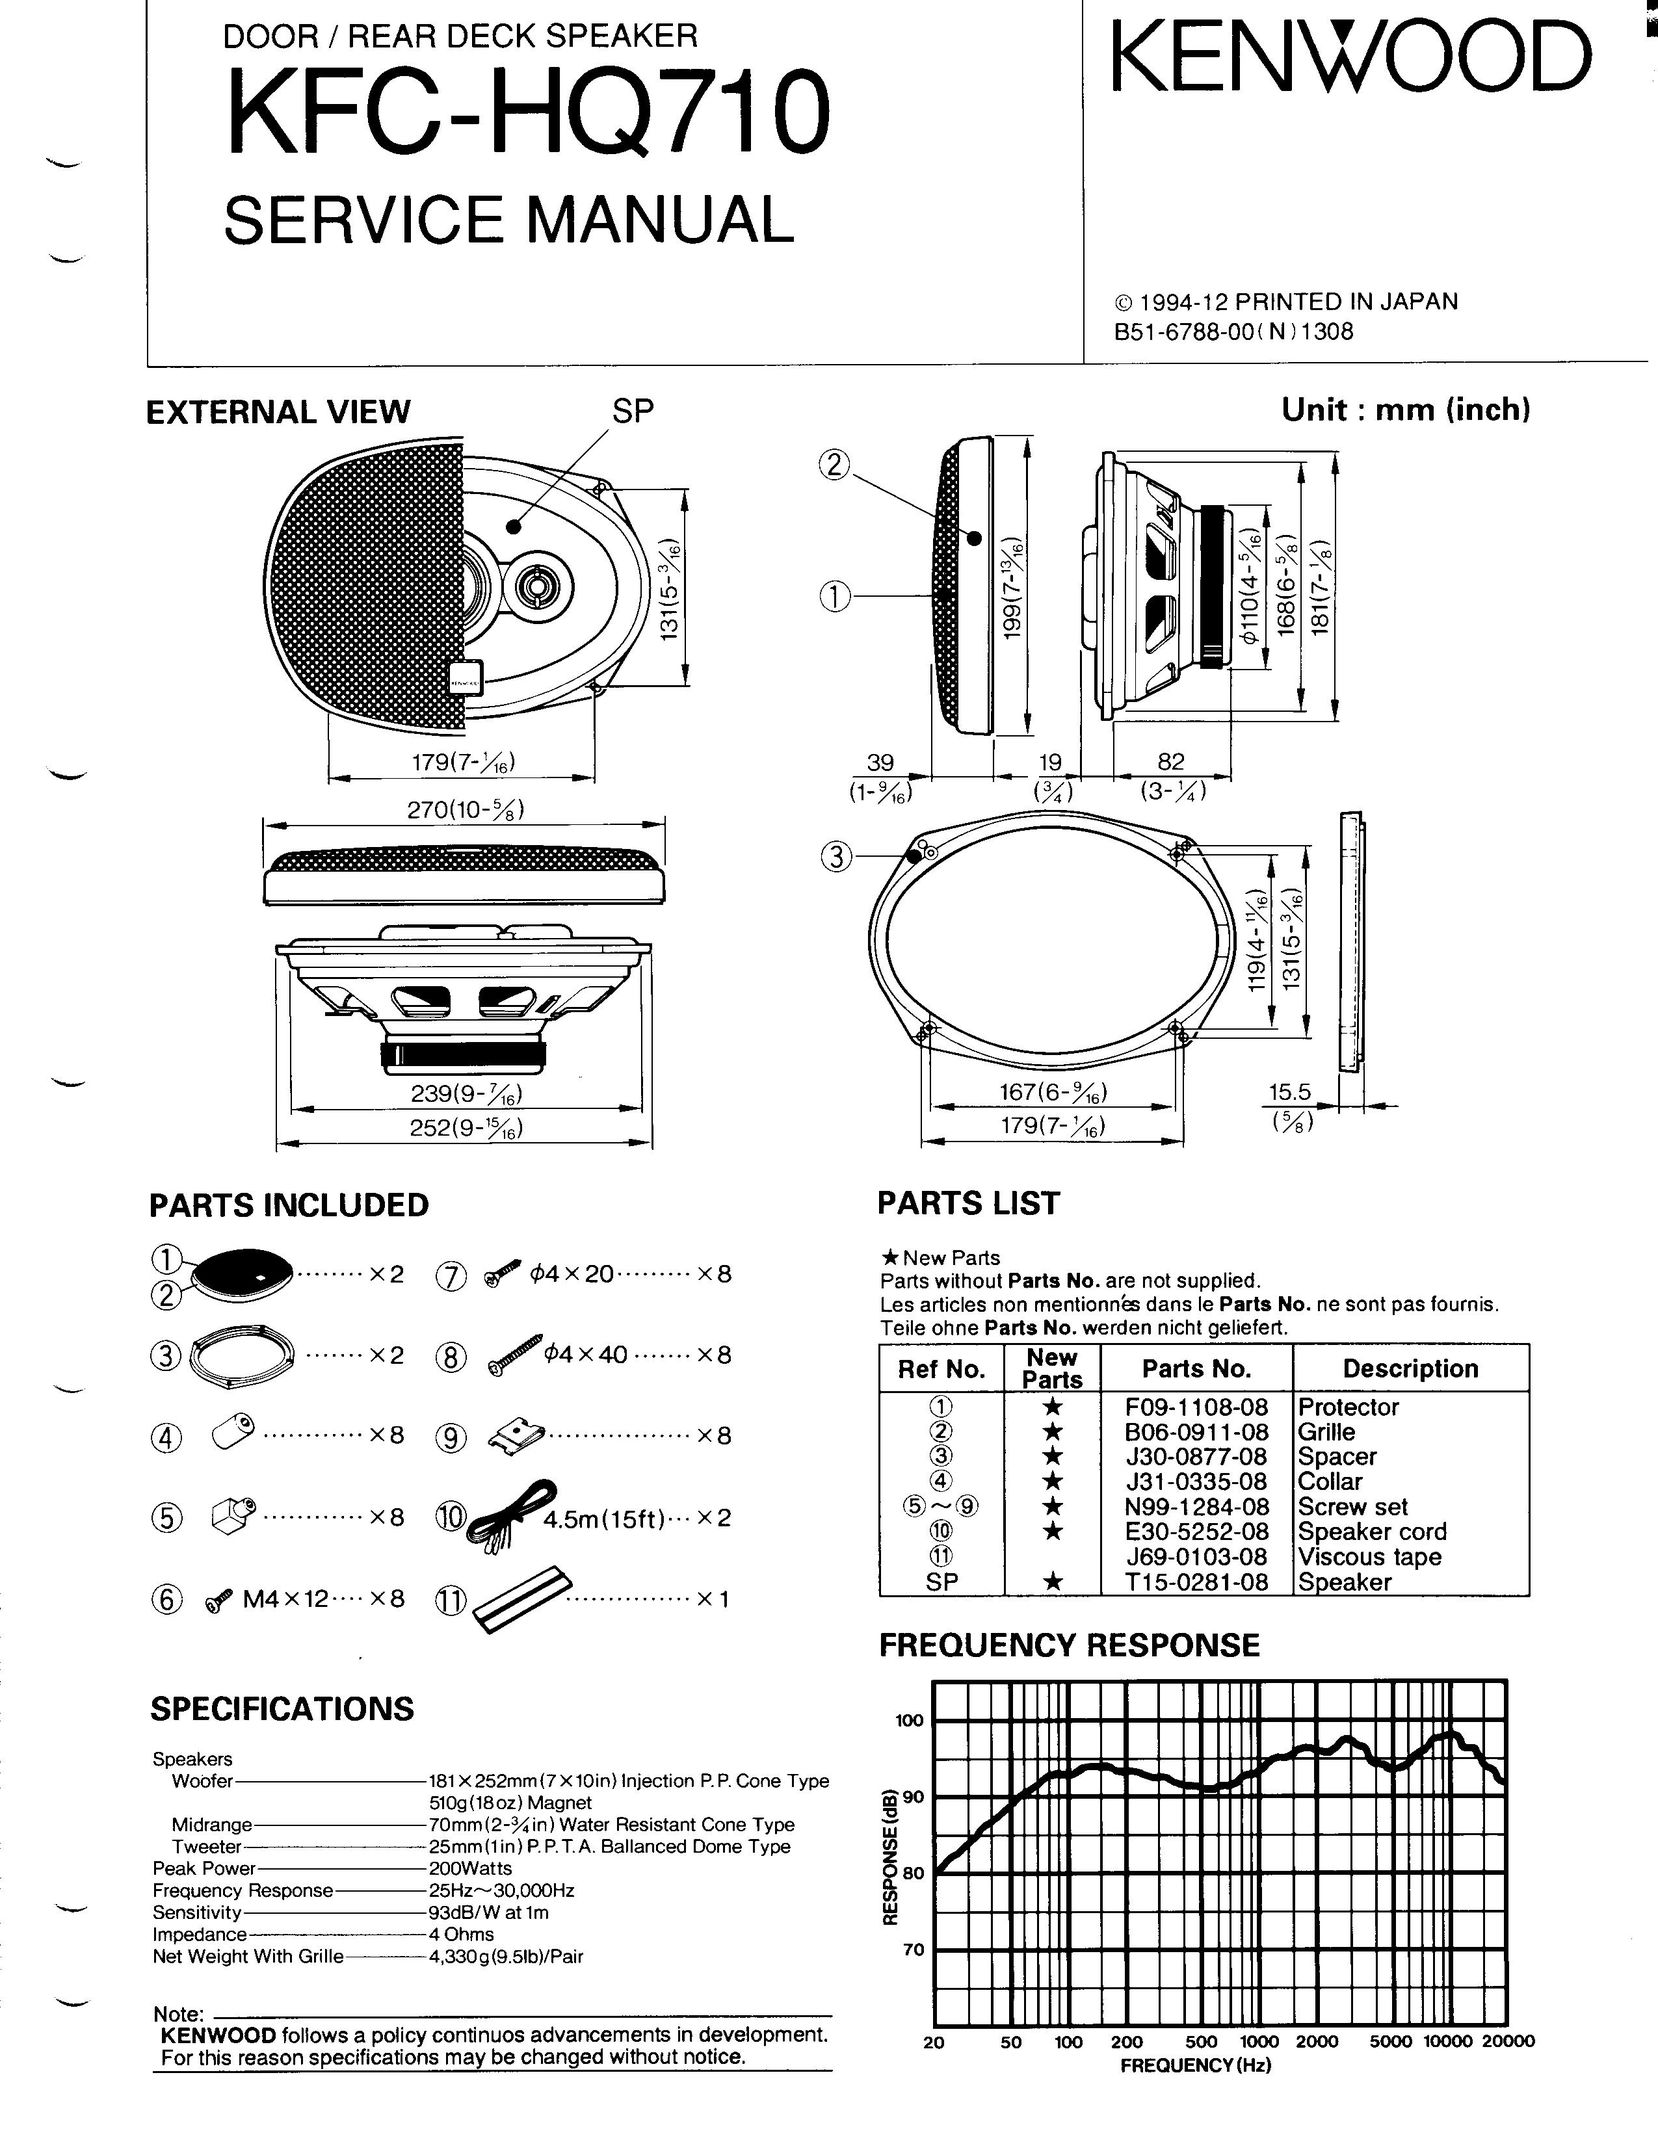 Kenwood KFC-HQ710 Car Speaker User Manual